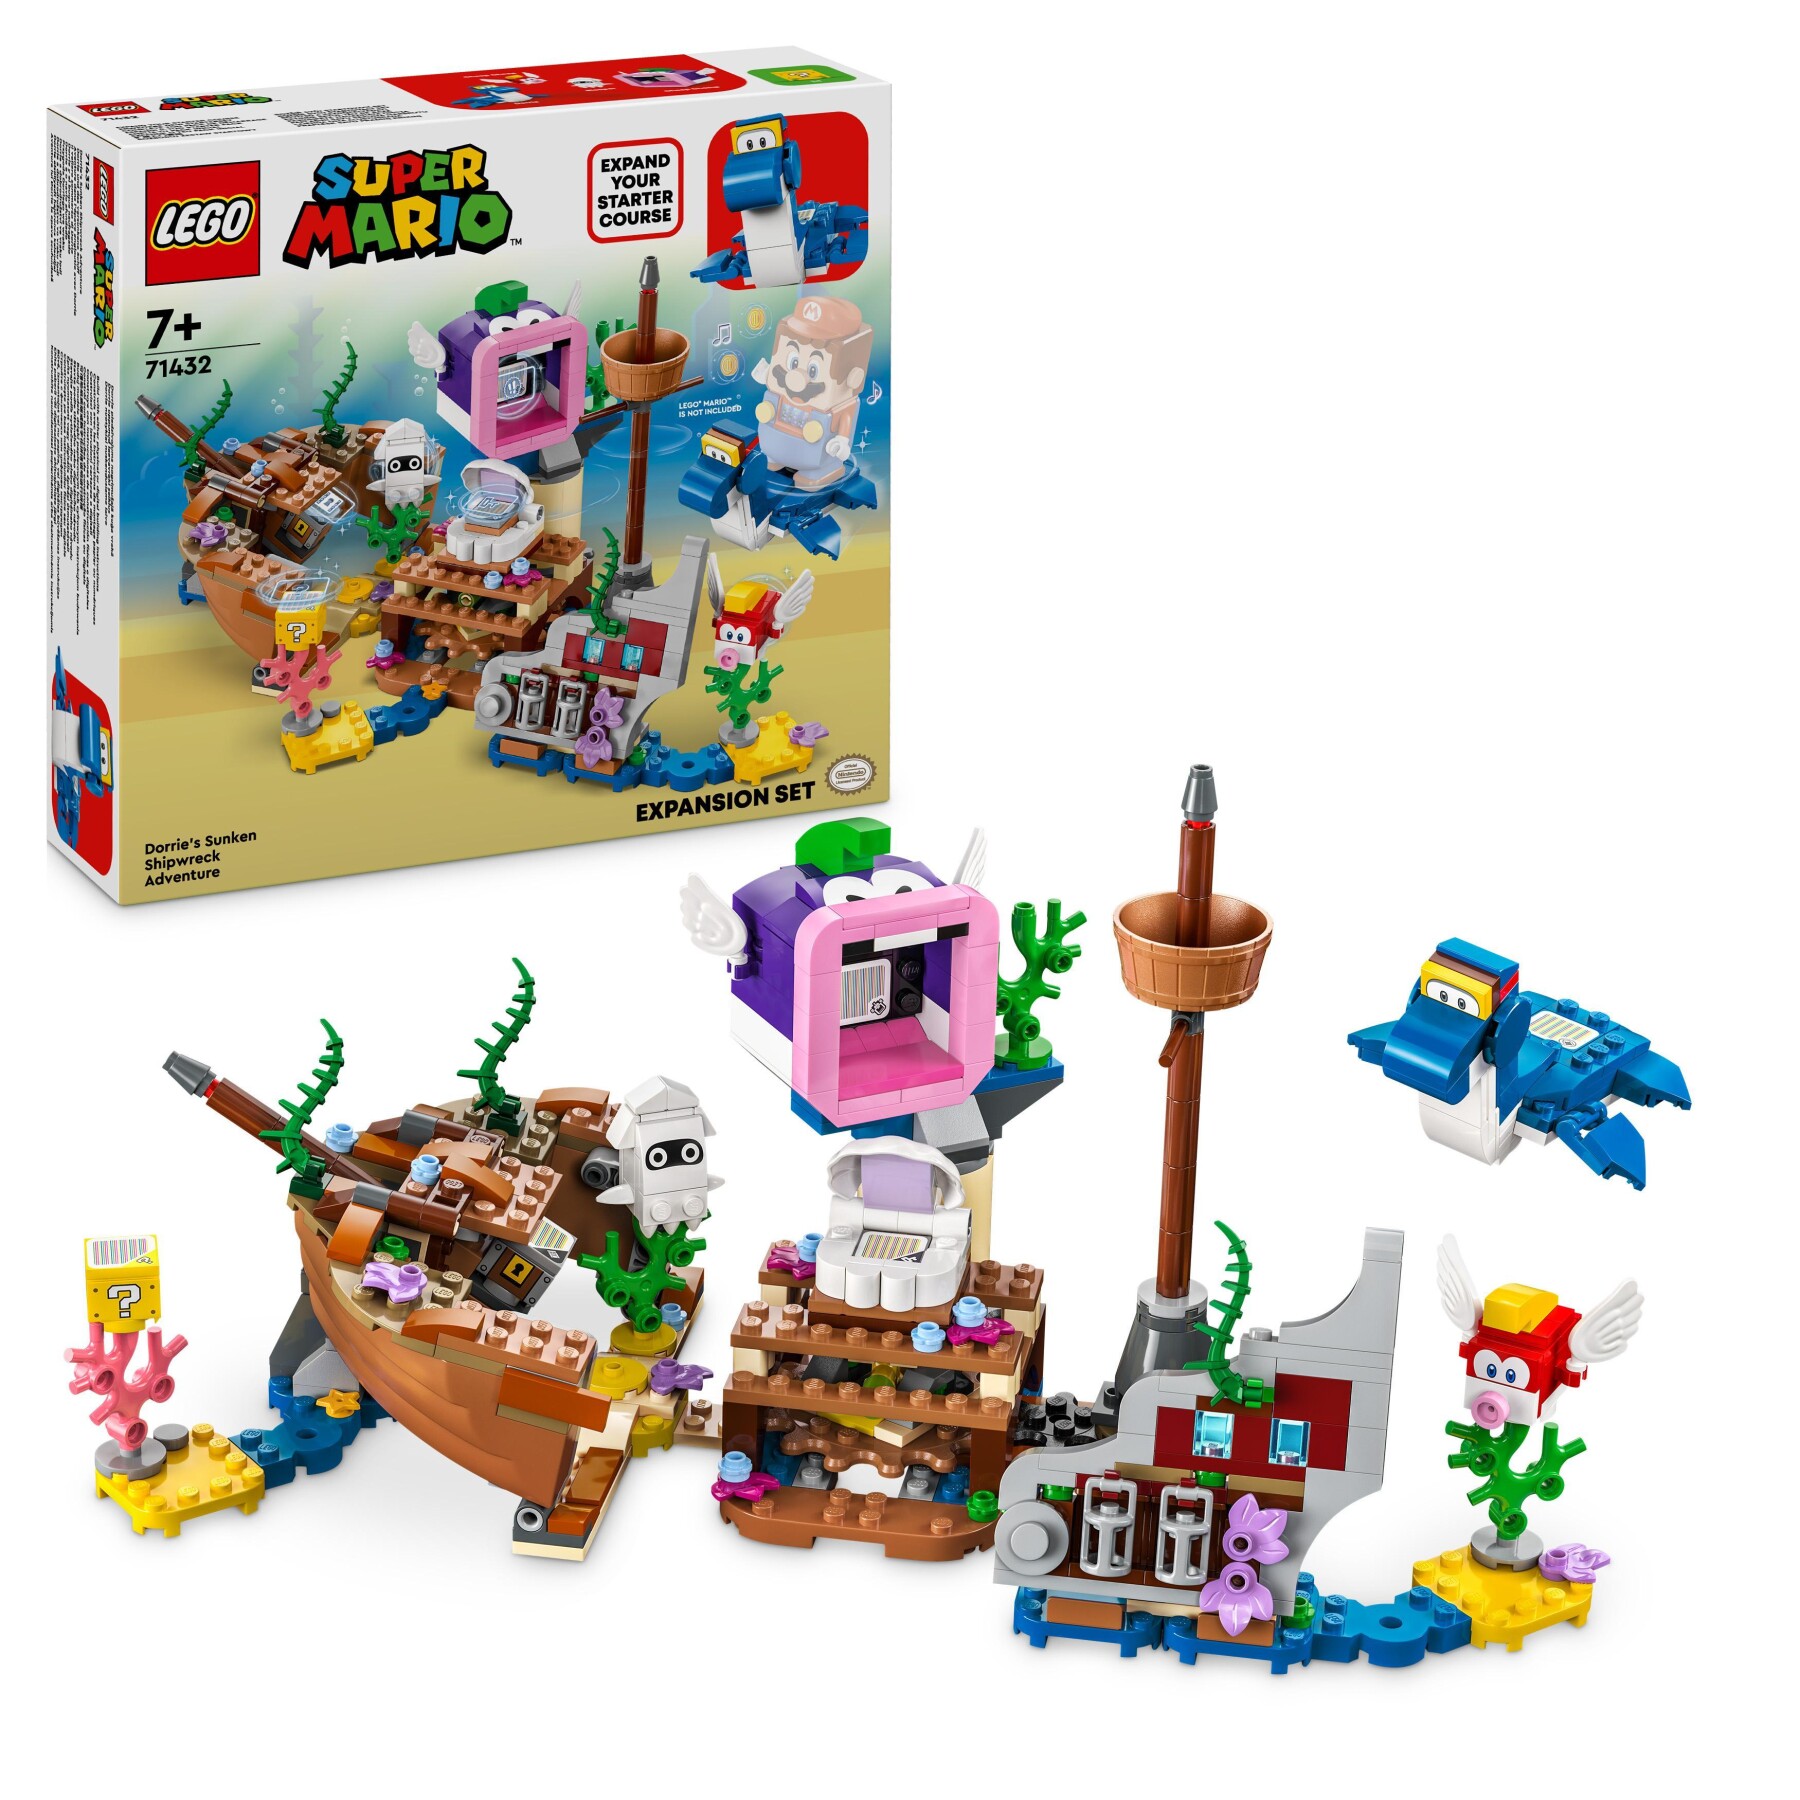 Lego super mario 71432 pack di espansione il veliero sommerso di dorrie, giochi bambini 7+ con barca giocattolo e 4 personaggi - LEGO® Super Mario™, Super Mario